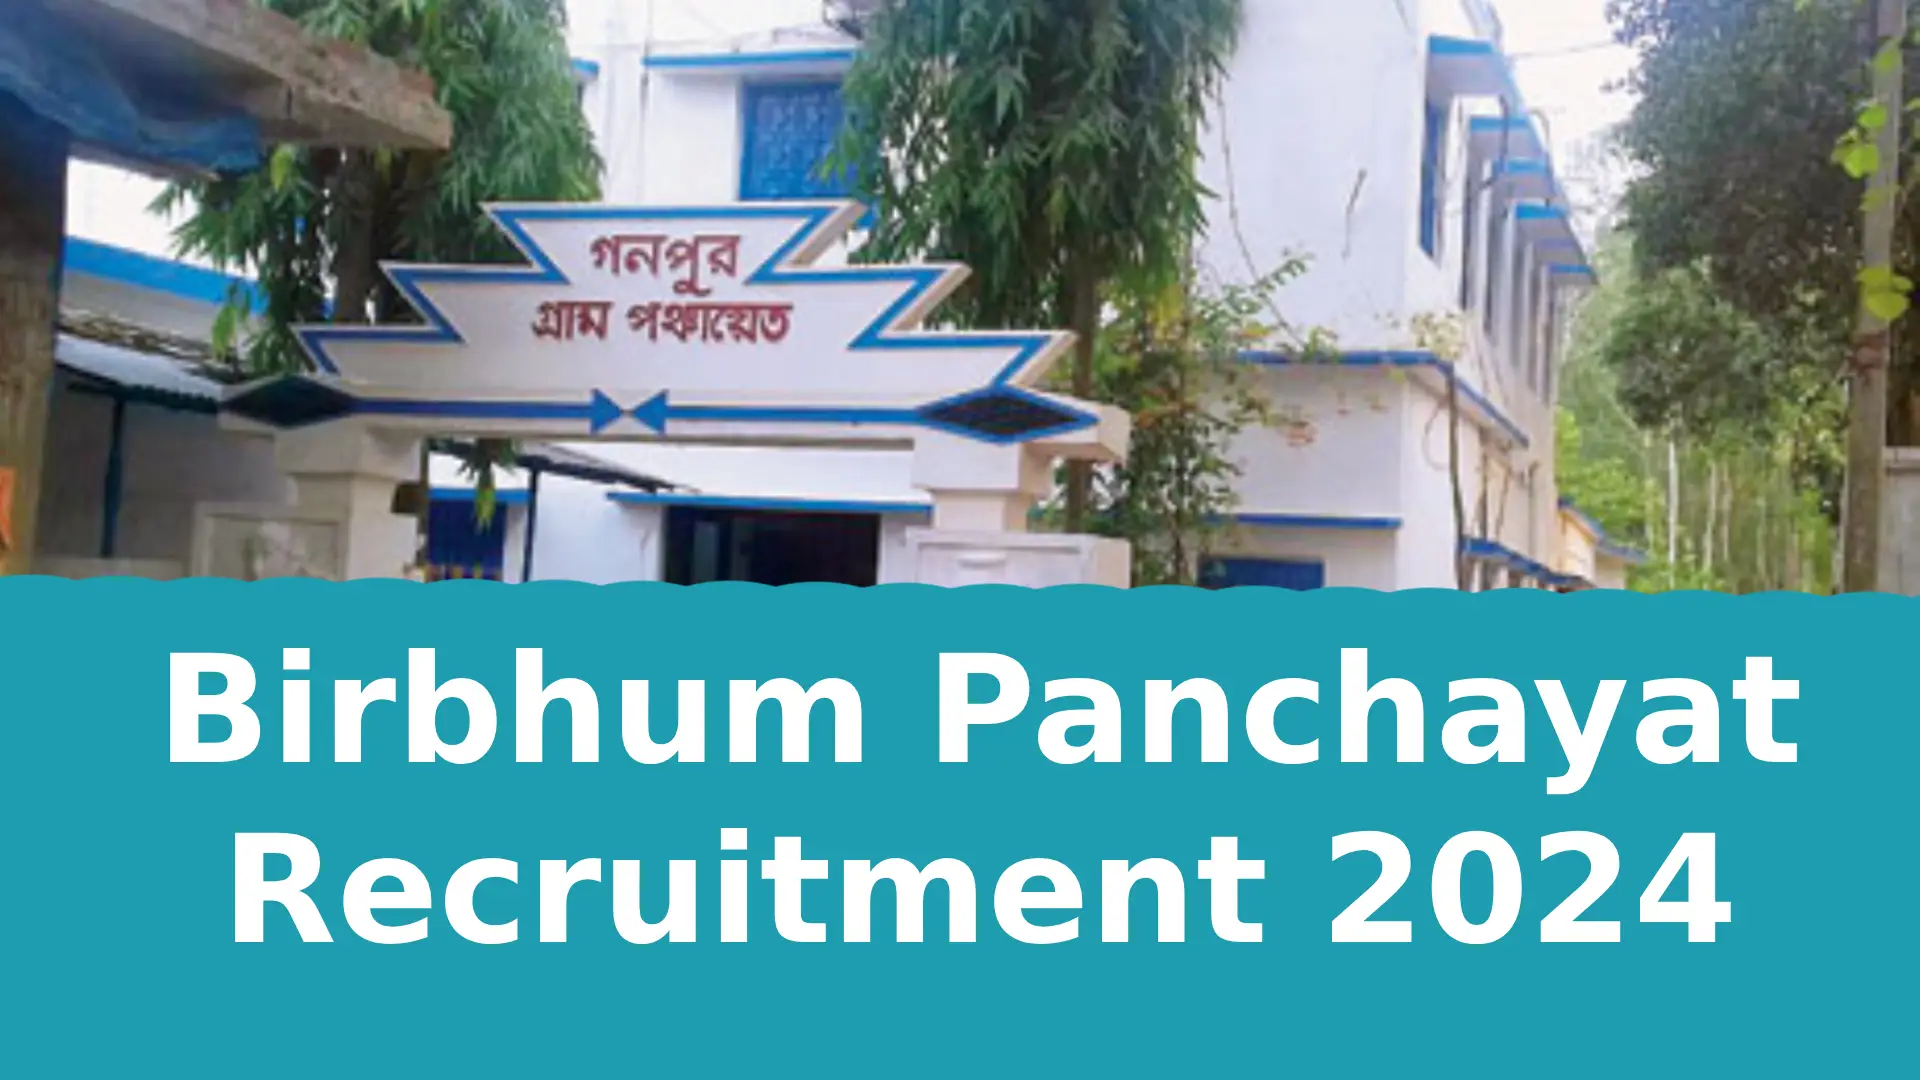 Birbhum Panchayat Recruitment 2024